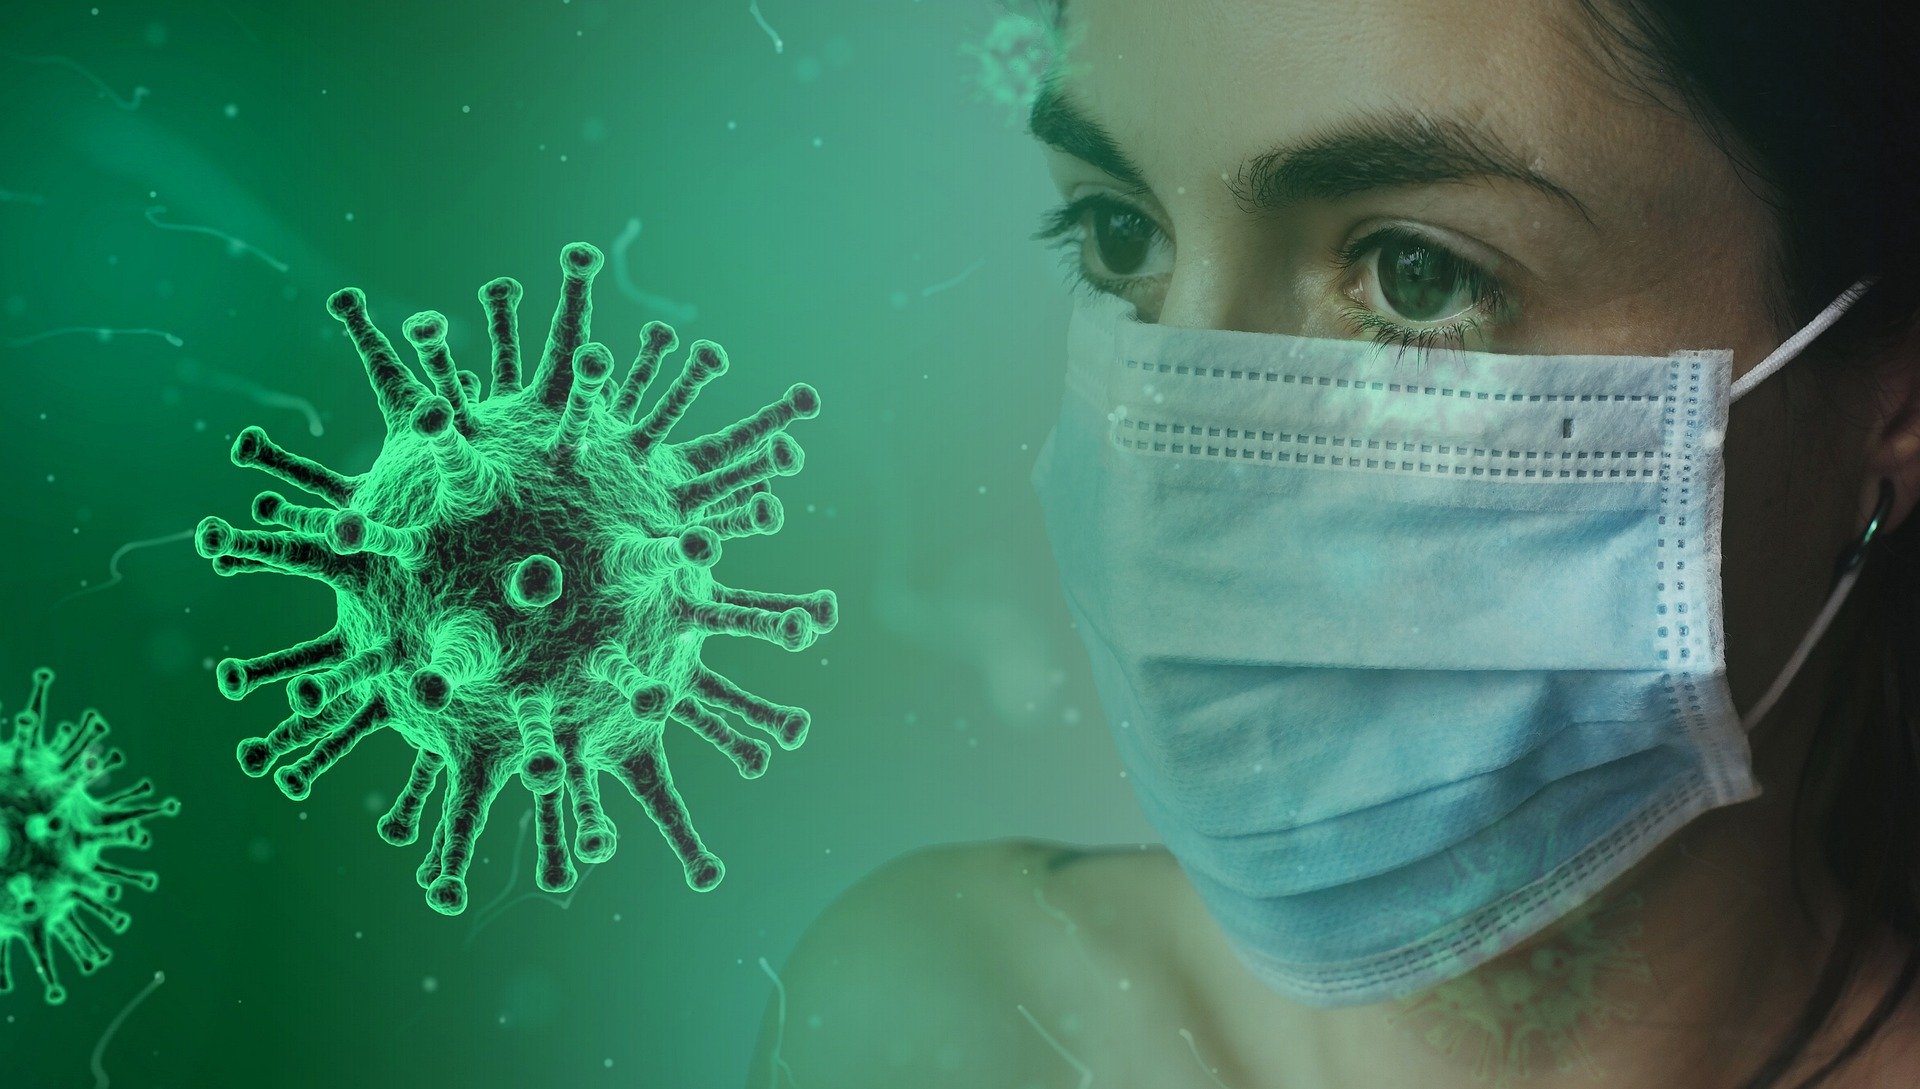 Prof.Dr. Recep Tekin ” Kapalı Alanda Maske Taksanız Dahi Virüs Size 4 Saate Bulaşabiliyor”